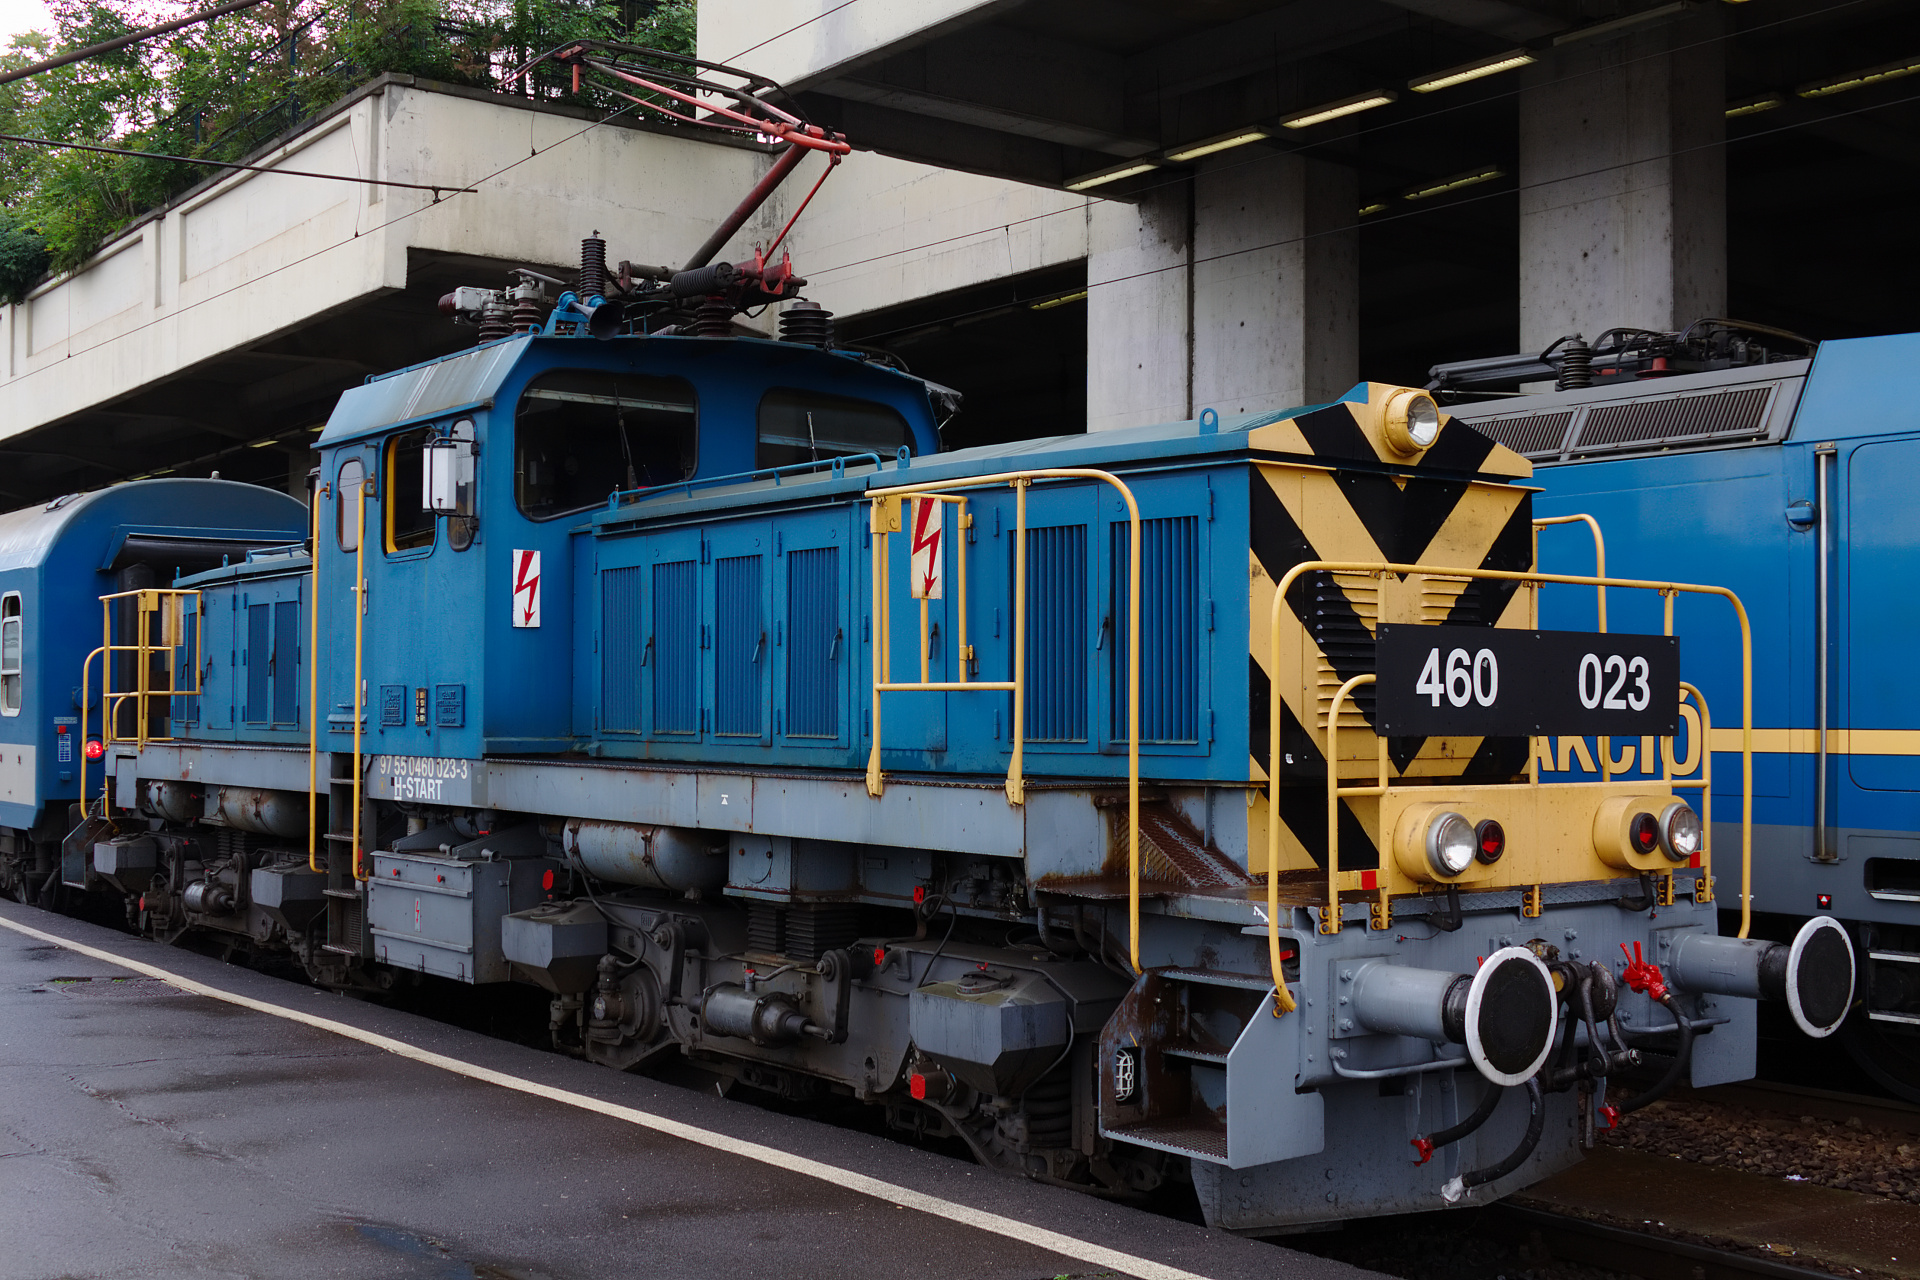 Ganz-MÁVAG VM16 V46 460 023 (Podróże » Budapeszt » Pojazdy » Pociągi i lokomotywy)